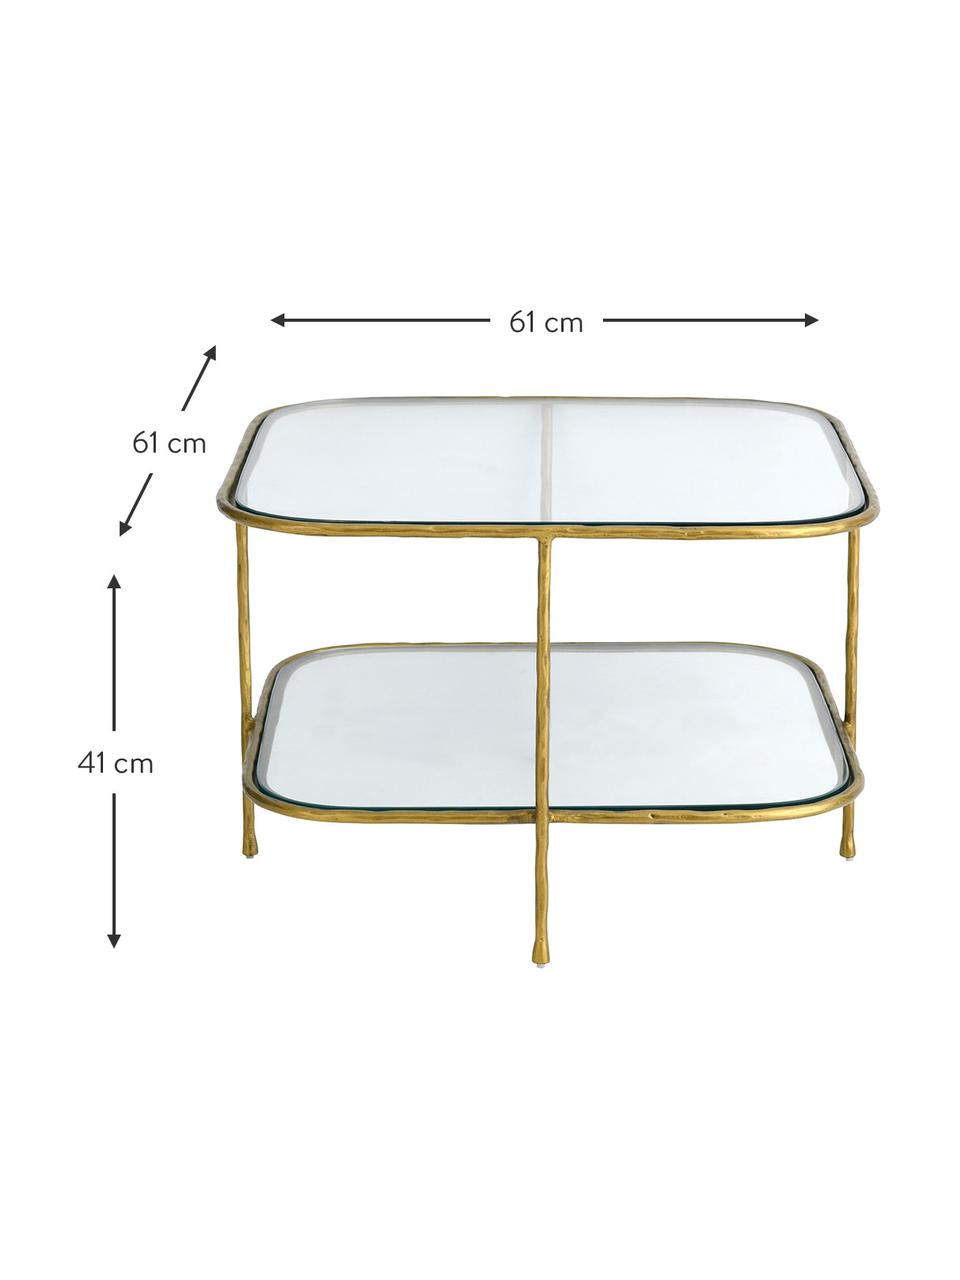 Glas-Couchtisch Petit, Tischplatte: gehärtes Glas, Gestell: Metall, beschichtet, Goldfarben, B 61 x T 61 cm